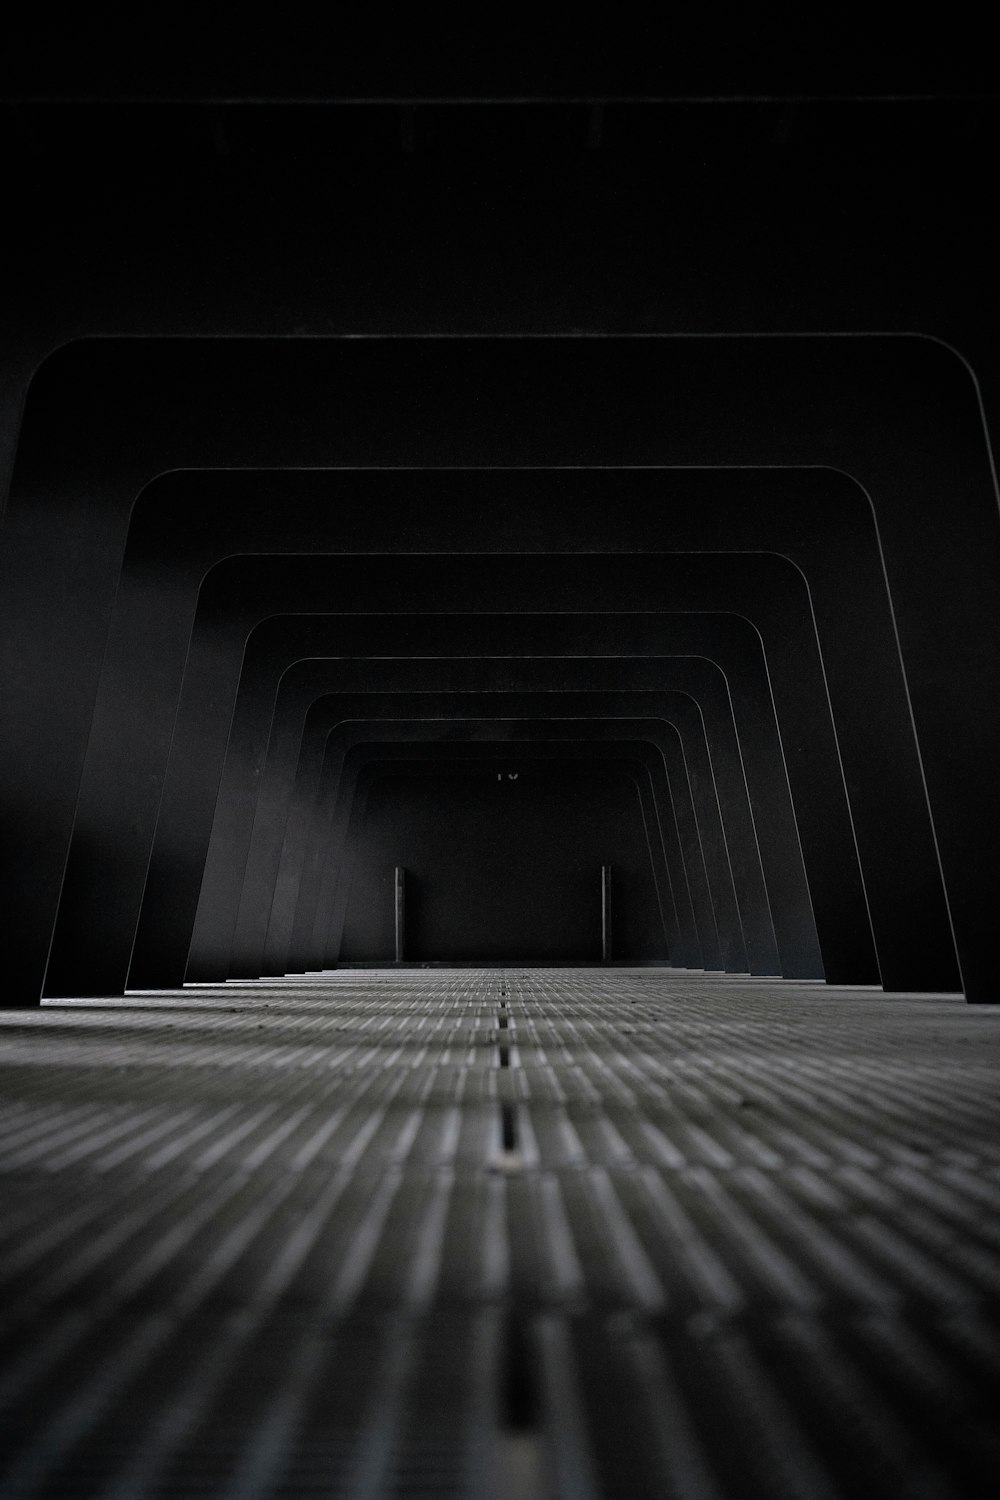 Tunnel noir et blanc dans la photographie en niveaux de gris